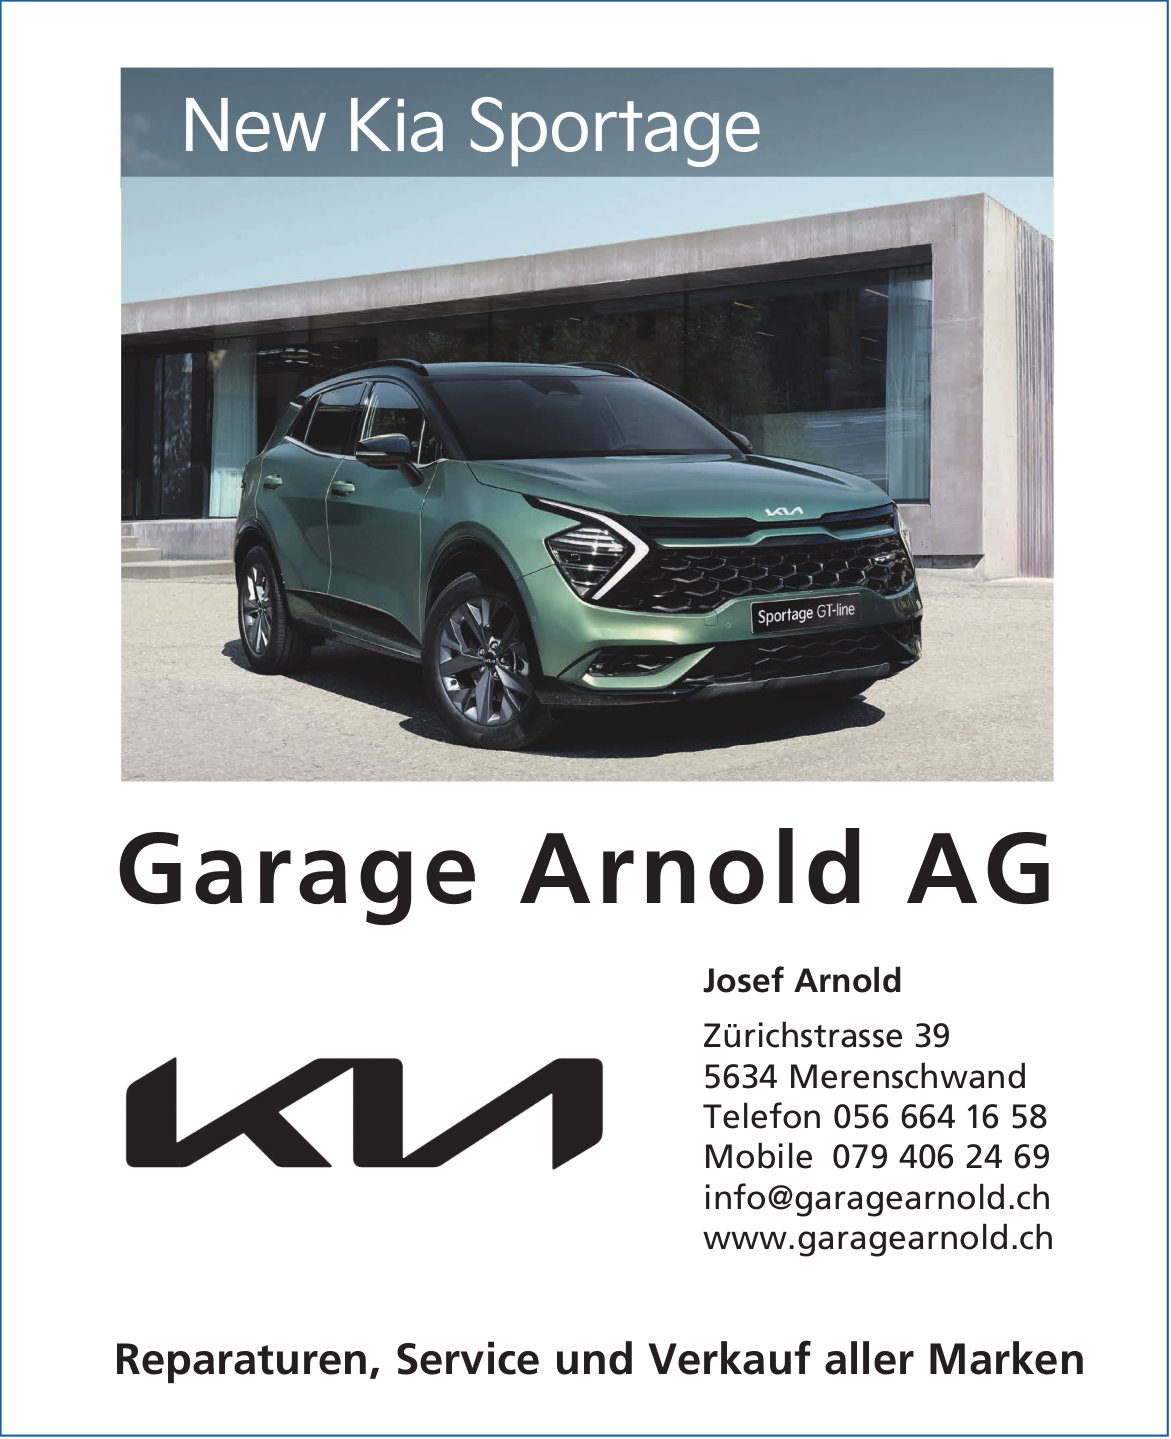 Garage Arnold AG, Merenschwand - New Kia Sportage